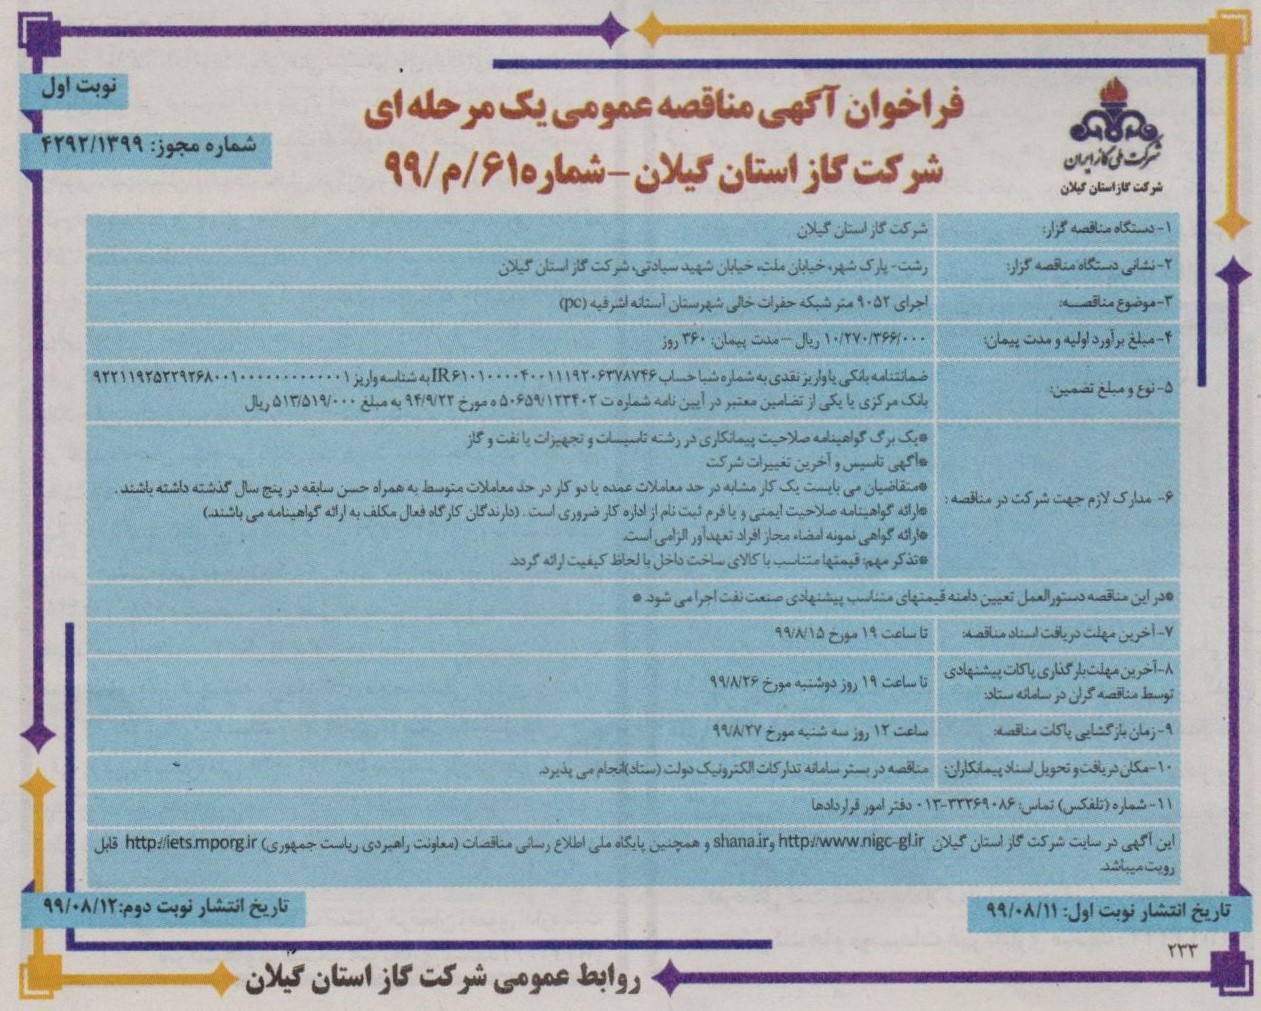 اجرای 9052 متر شبکه حفرات خالی شهرستان آستانه اشرفیه - 11 آبان 99